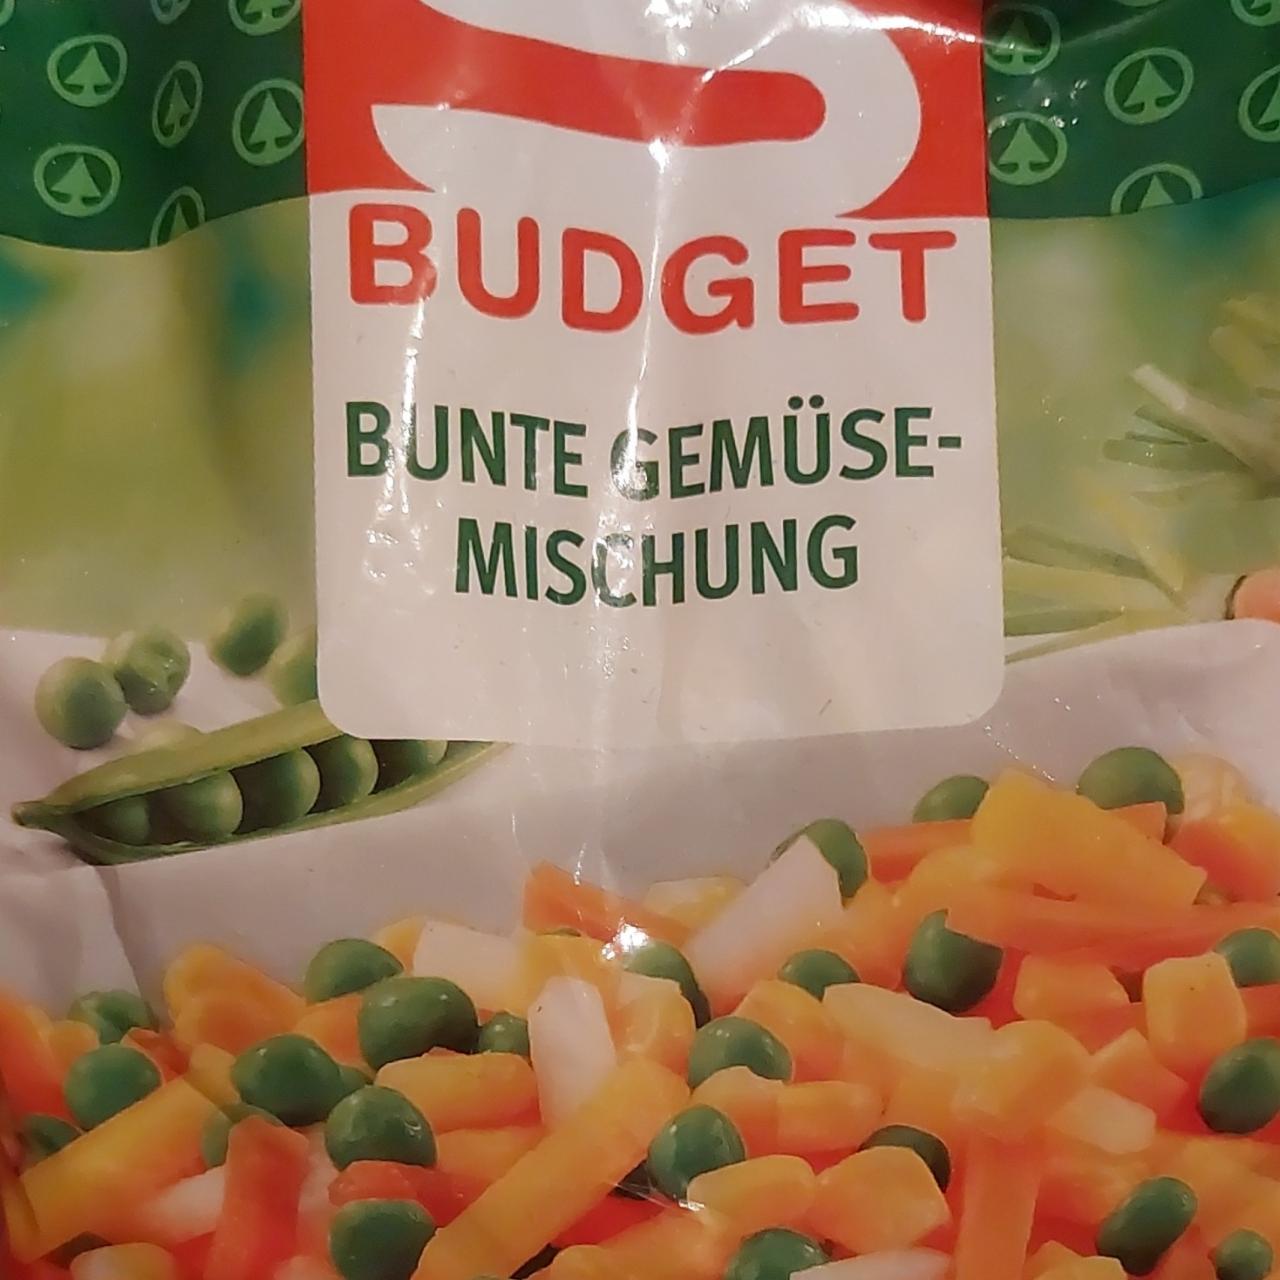 Fotografie - Bunte Gemüse-mischung S Budget